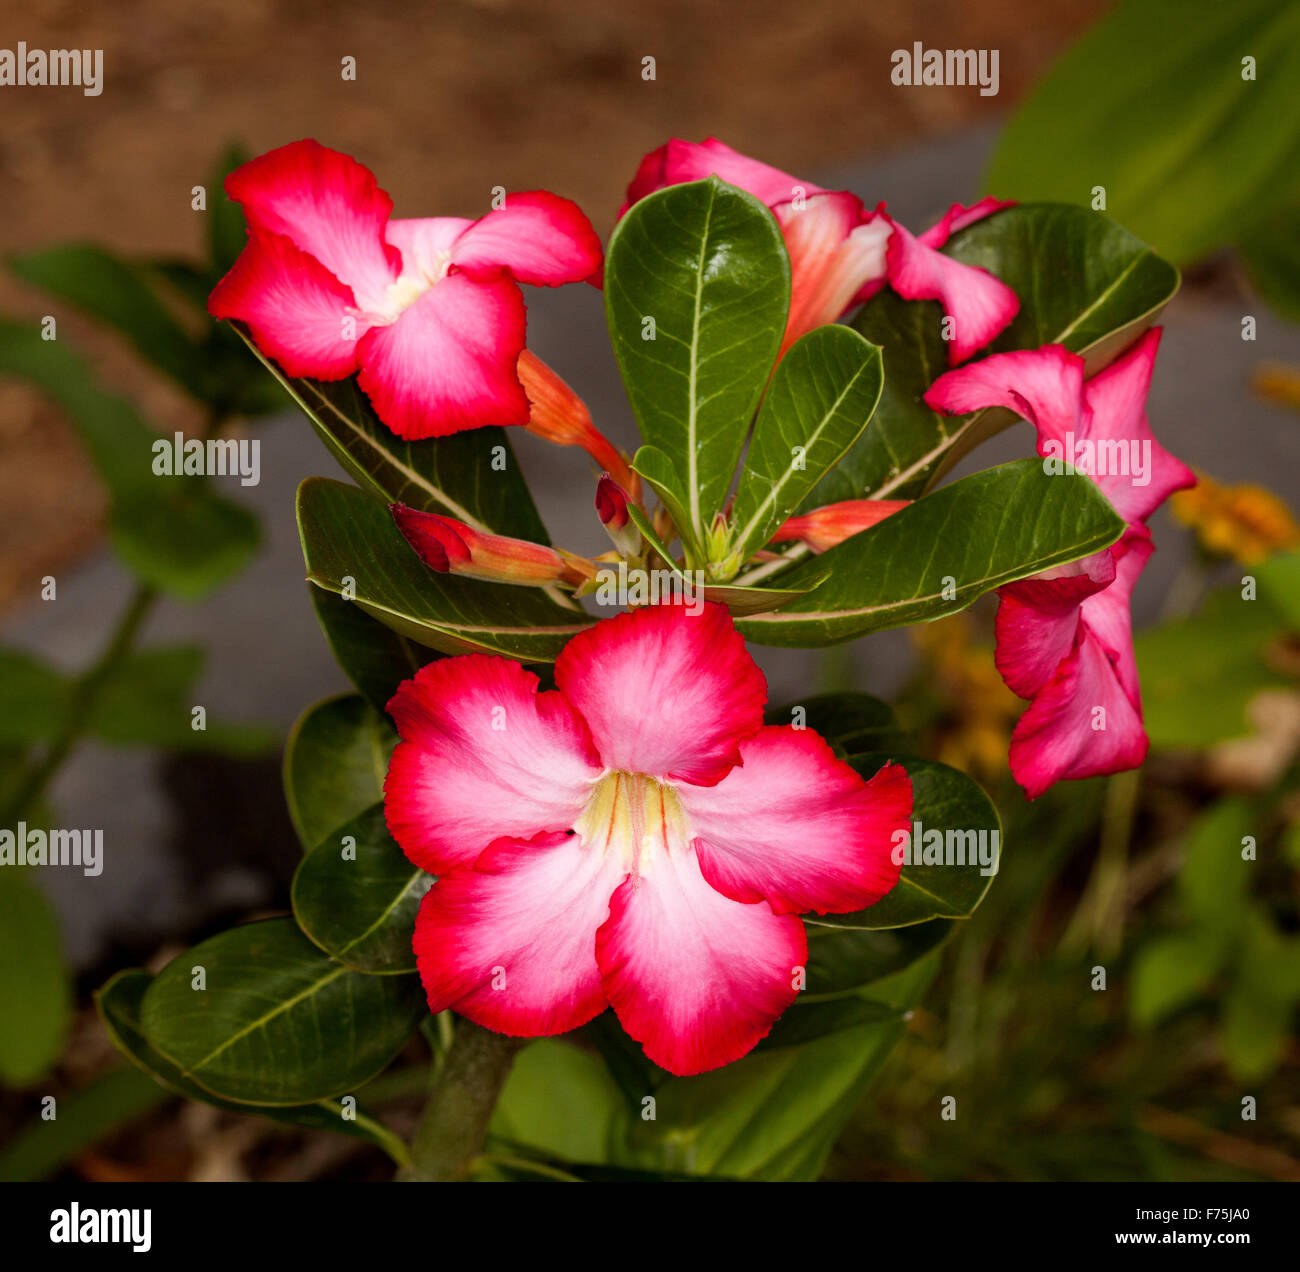 Rouge/rose foncé à gorge blanche, feuilles vert foncé et de bourgeons d'Adenium obesum "Jolie Rose', rose du désert africain Banque D'Images